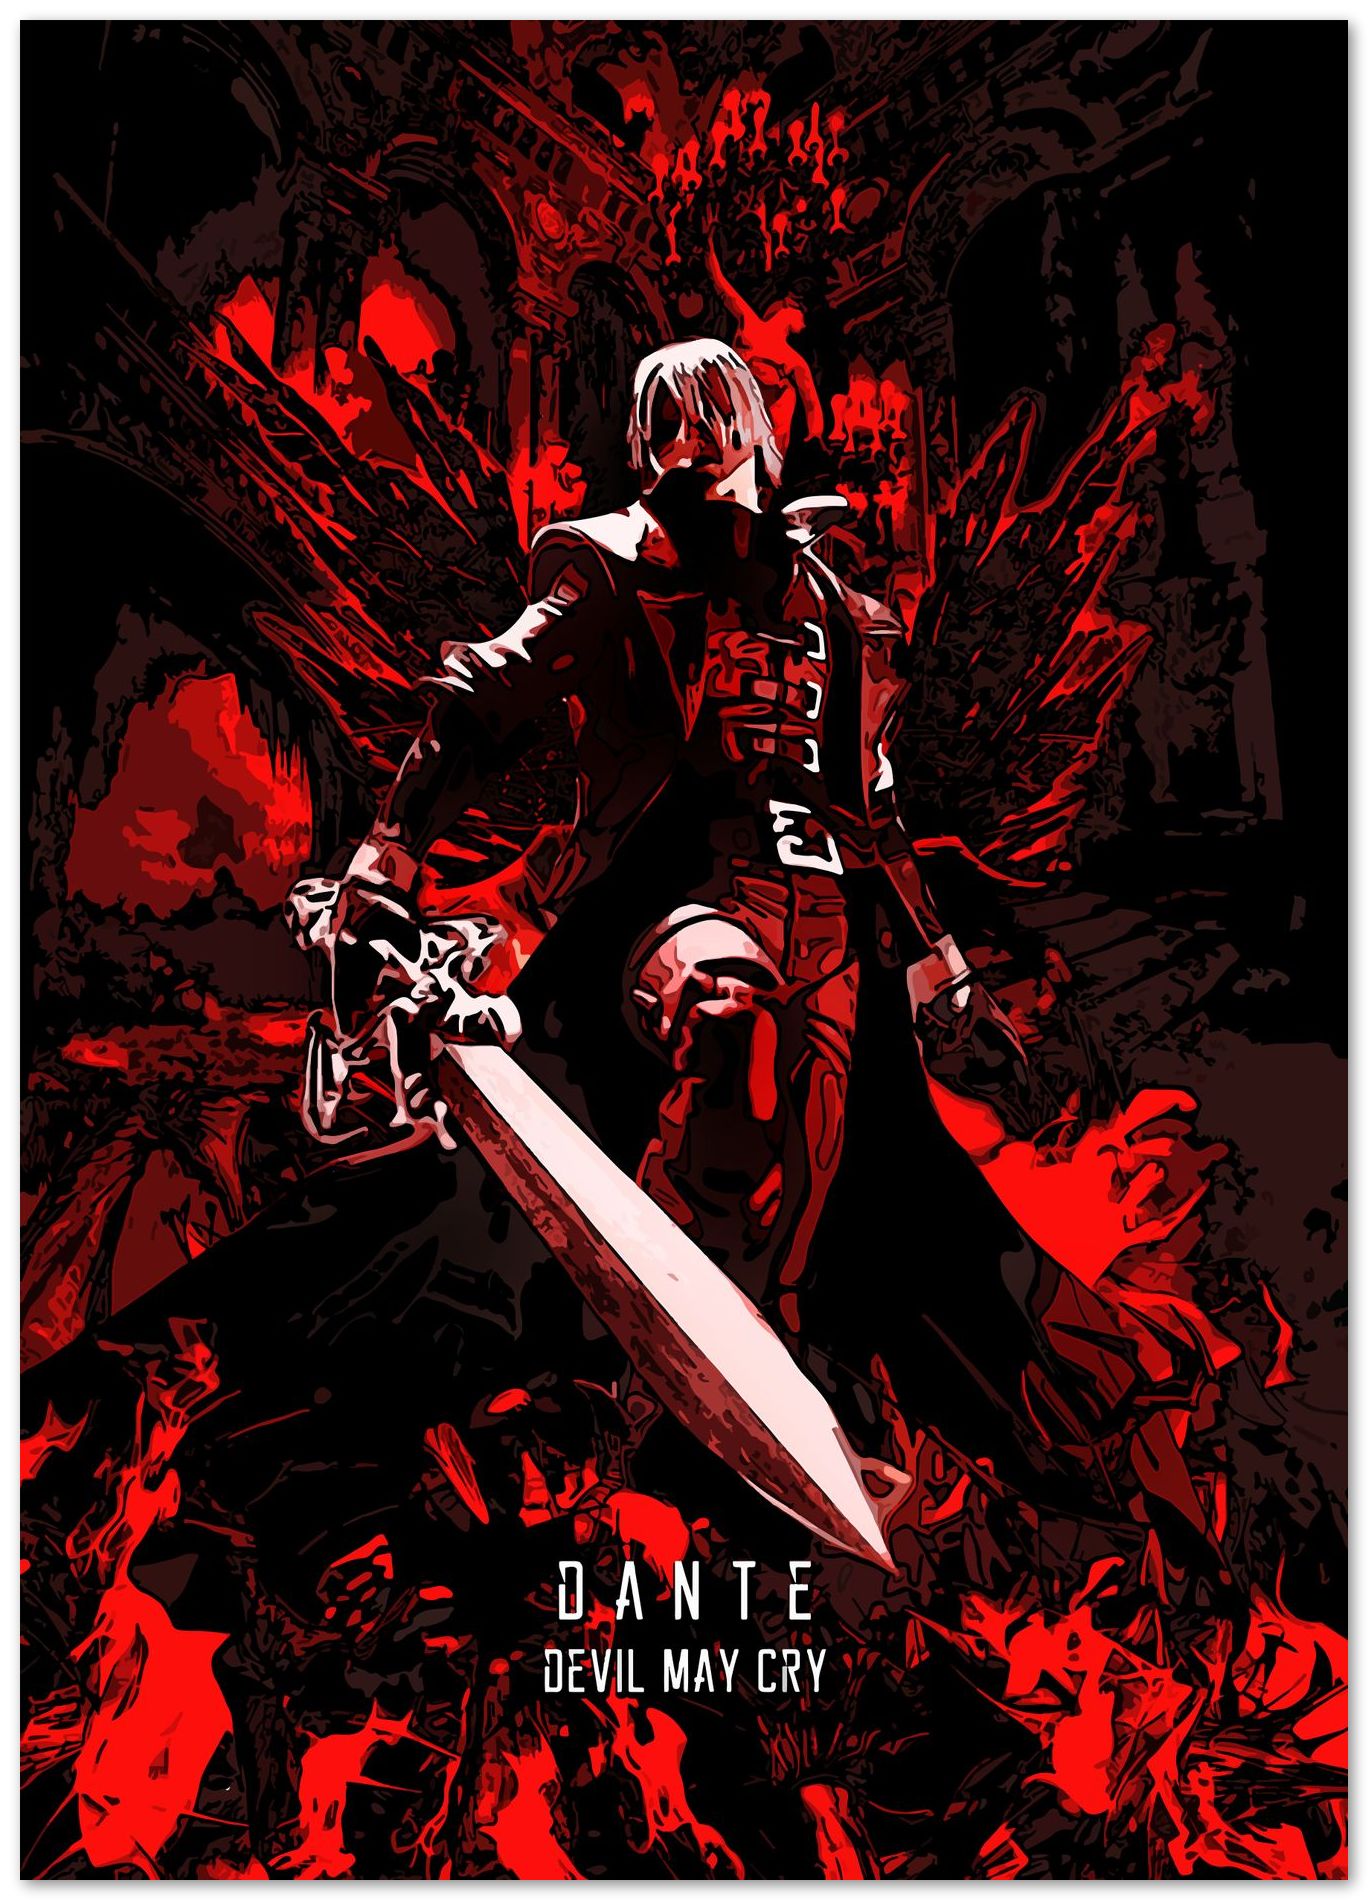 Devil May Cry 1 classic Dante - @SyanArt